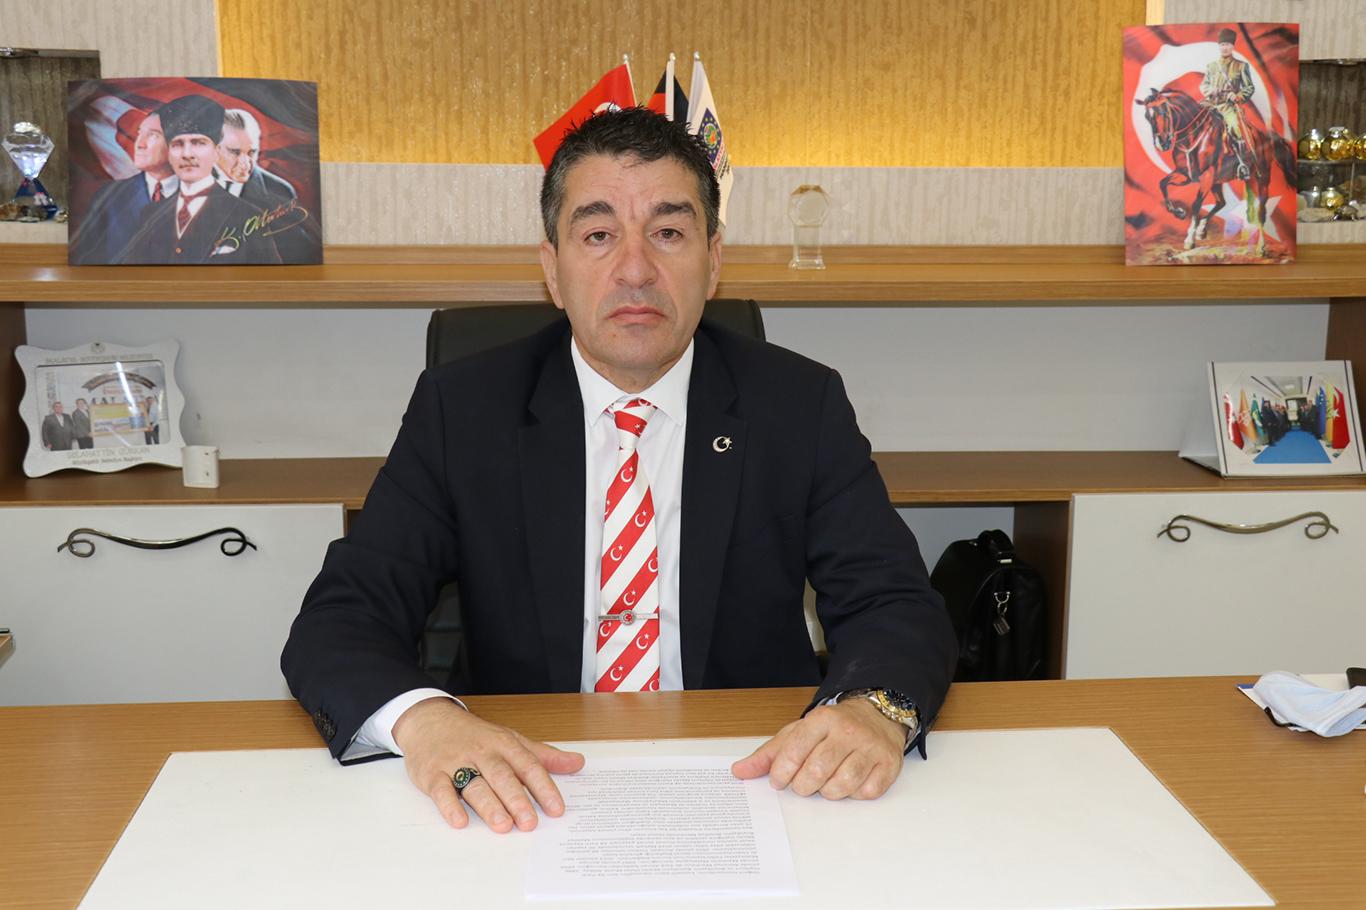 AK Partili meclis üyesi Alabaş partisinden istifa ettiğini açıkladı